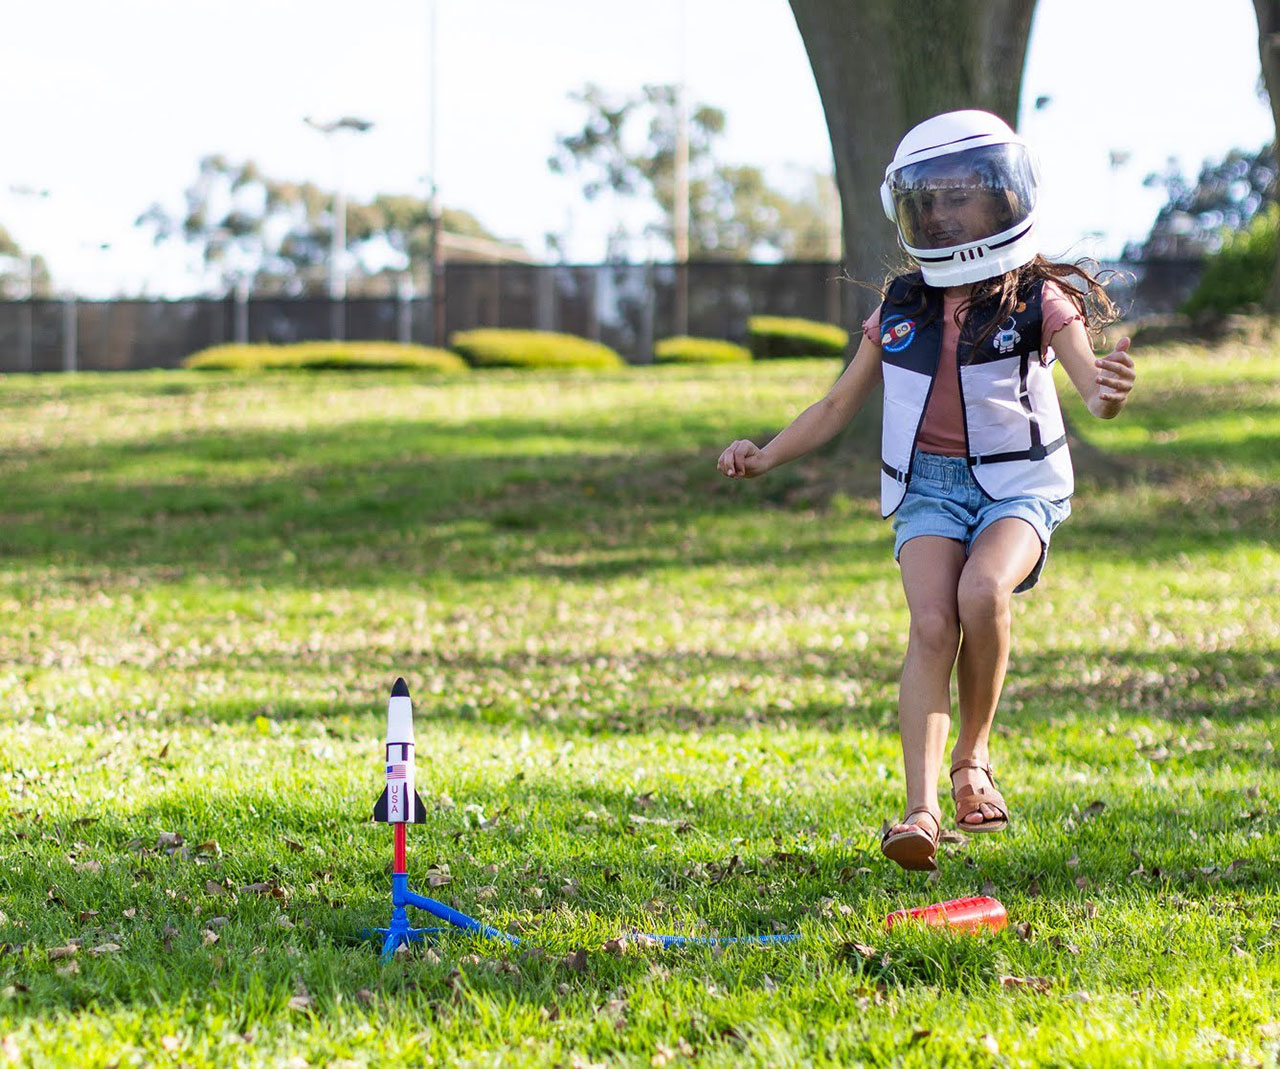 Los juguetes Stomp Rocket, como el Saturn V de la nueva colección de la NASA que se ve aquí, tienen como objetivo enseñar a los niños sobre la fuerza, el impulso y los ángulos de lanzamiento mientras juegan.